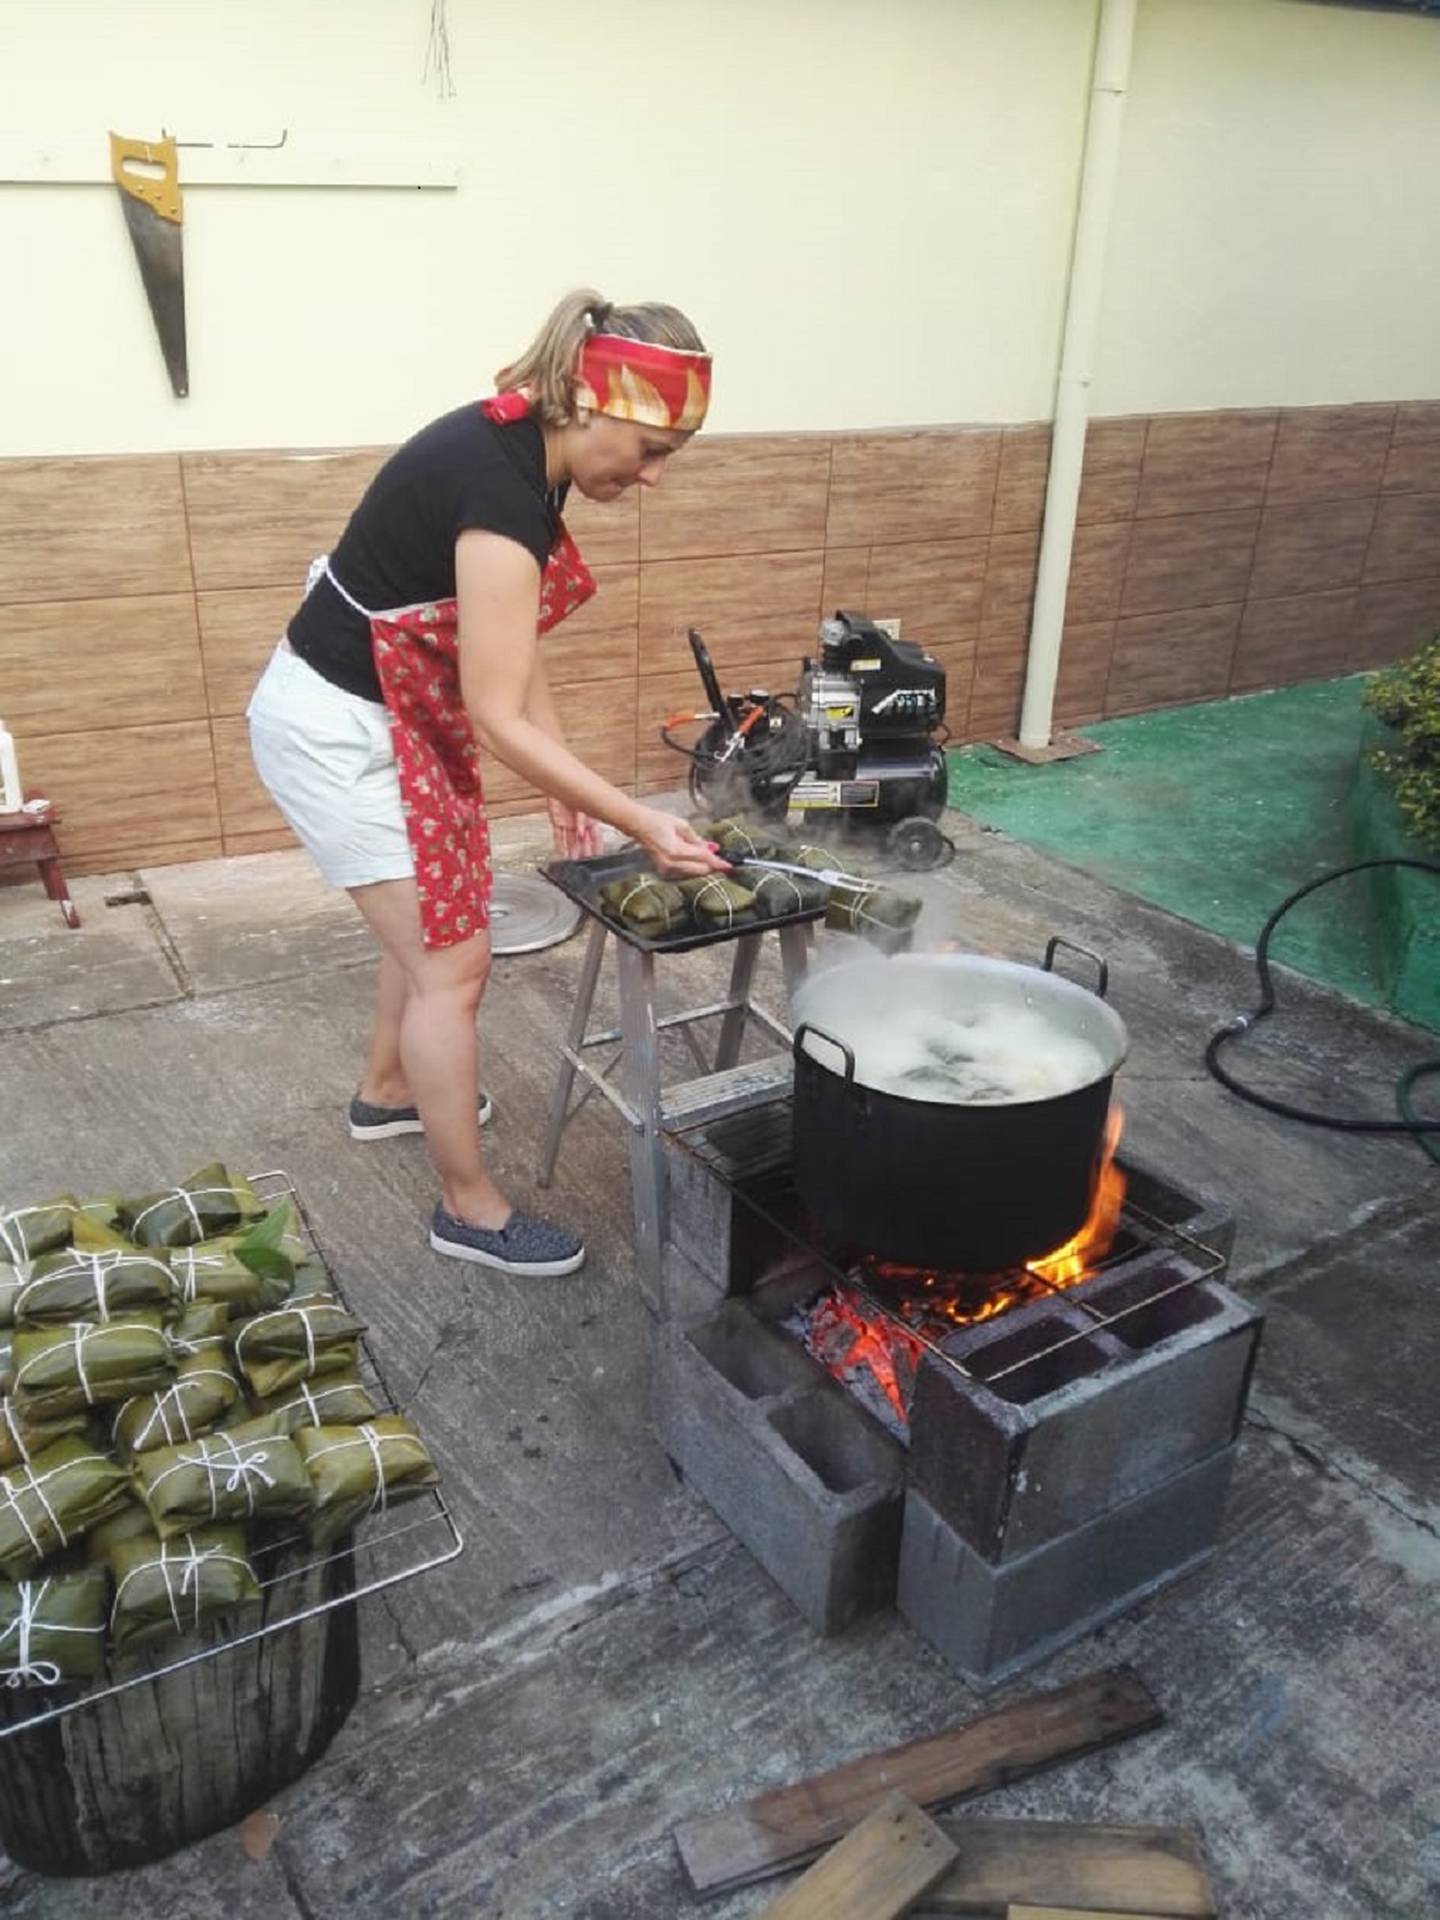 La familia Carvajal de San Francisco de Dos Ríos hace tamales hace más de 50 años. En la foto Karina Solano cocina piñas de tamal.